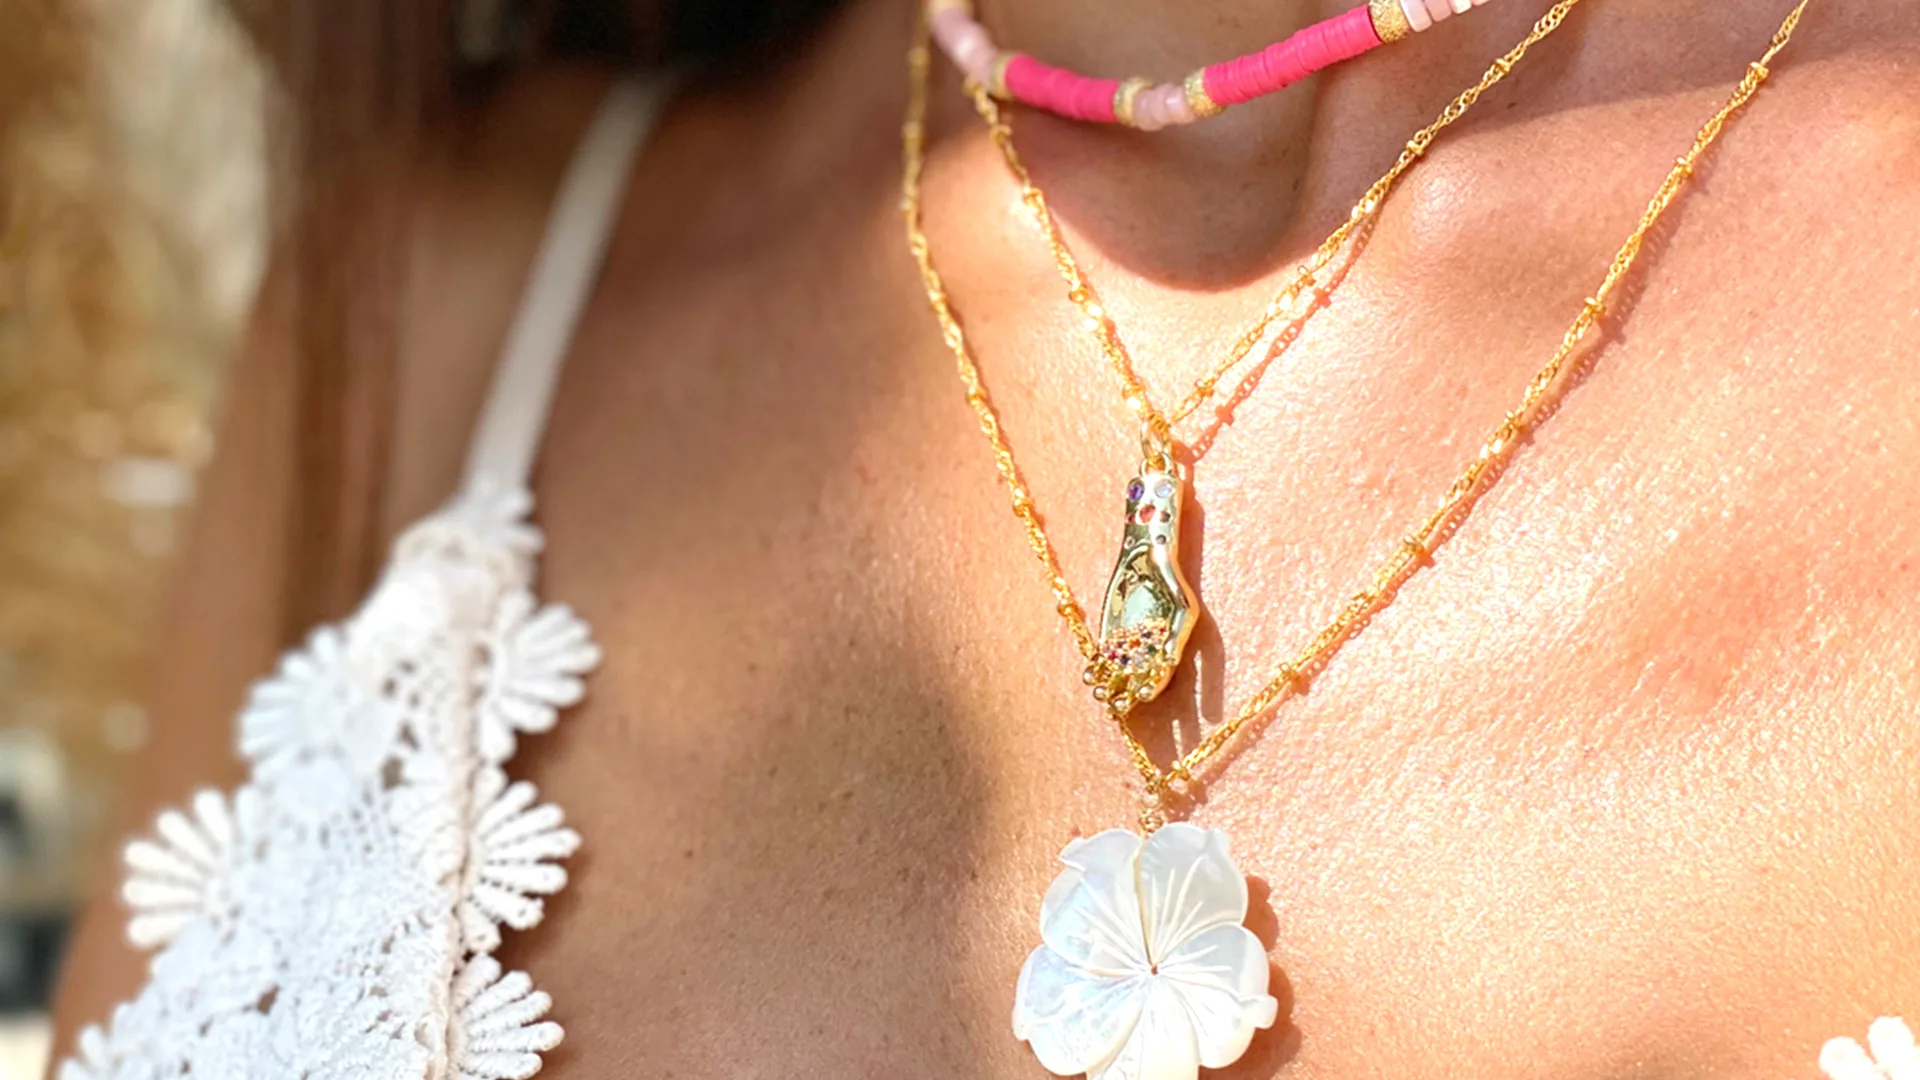 Rose soleil - shop online - gioielli femminili - collane donna - accessori donna